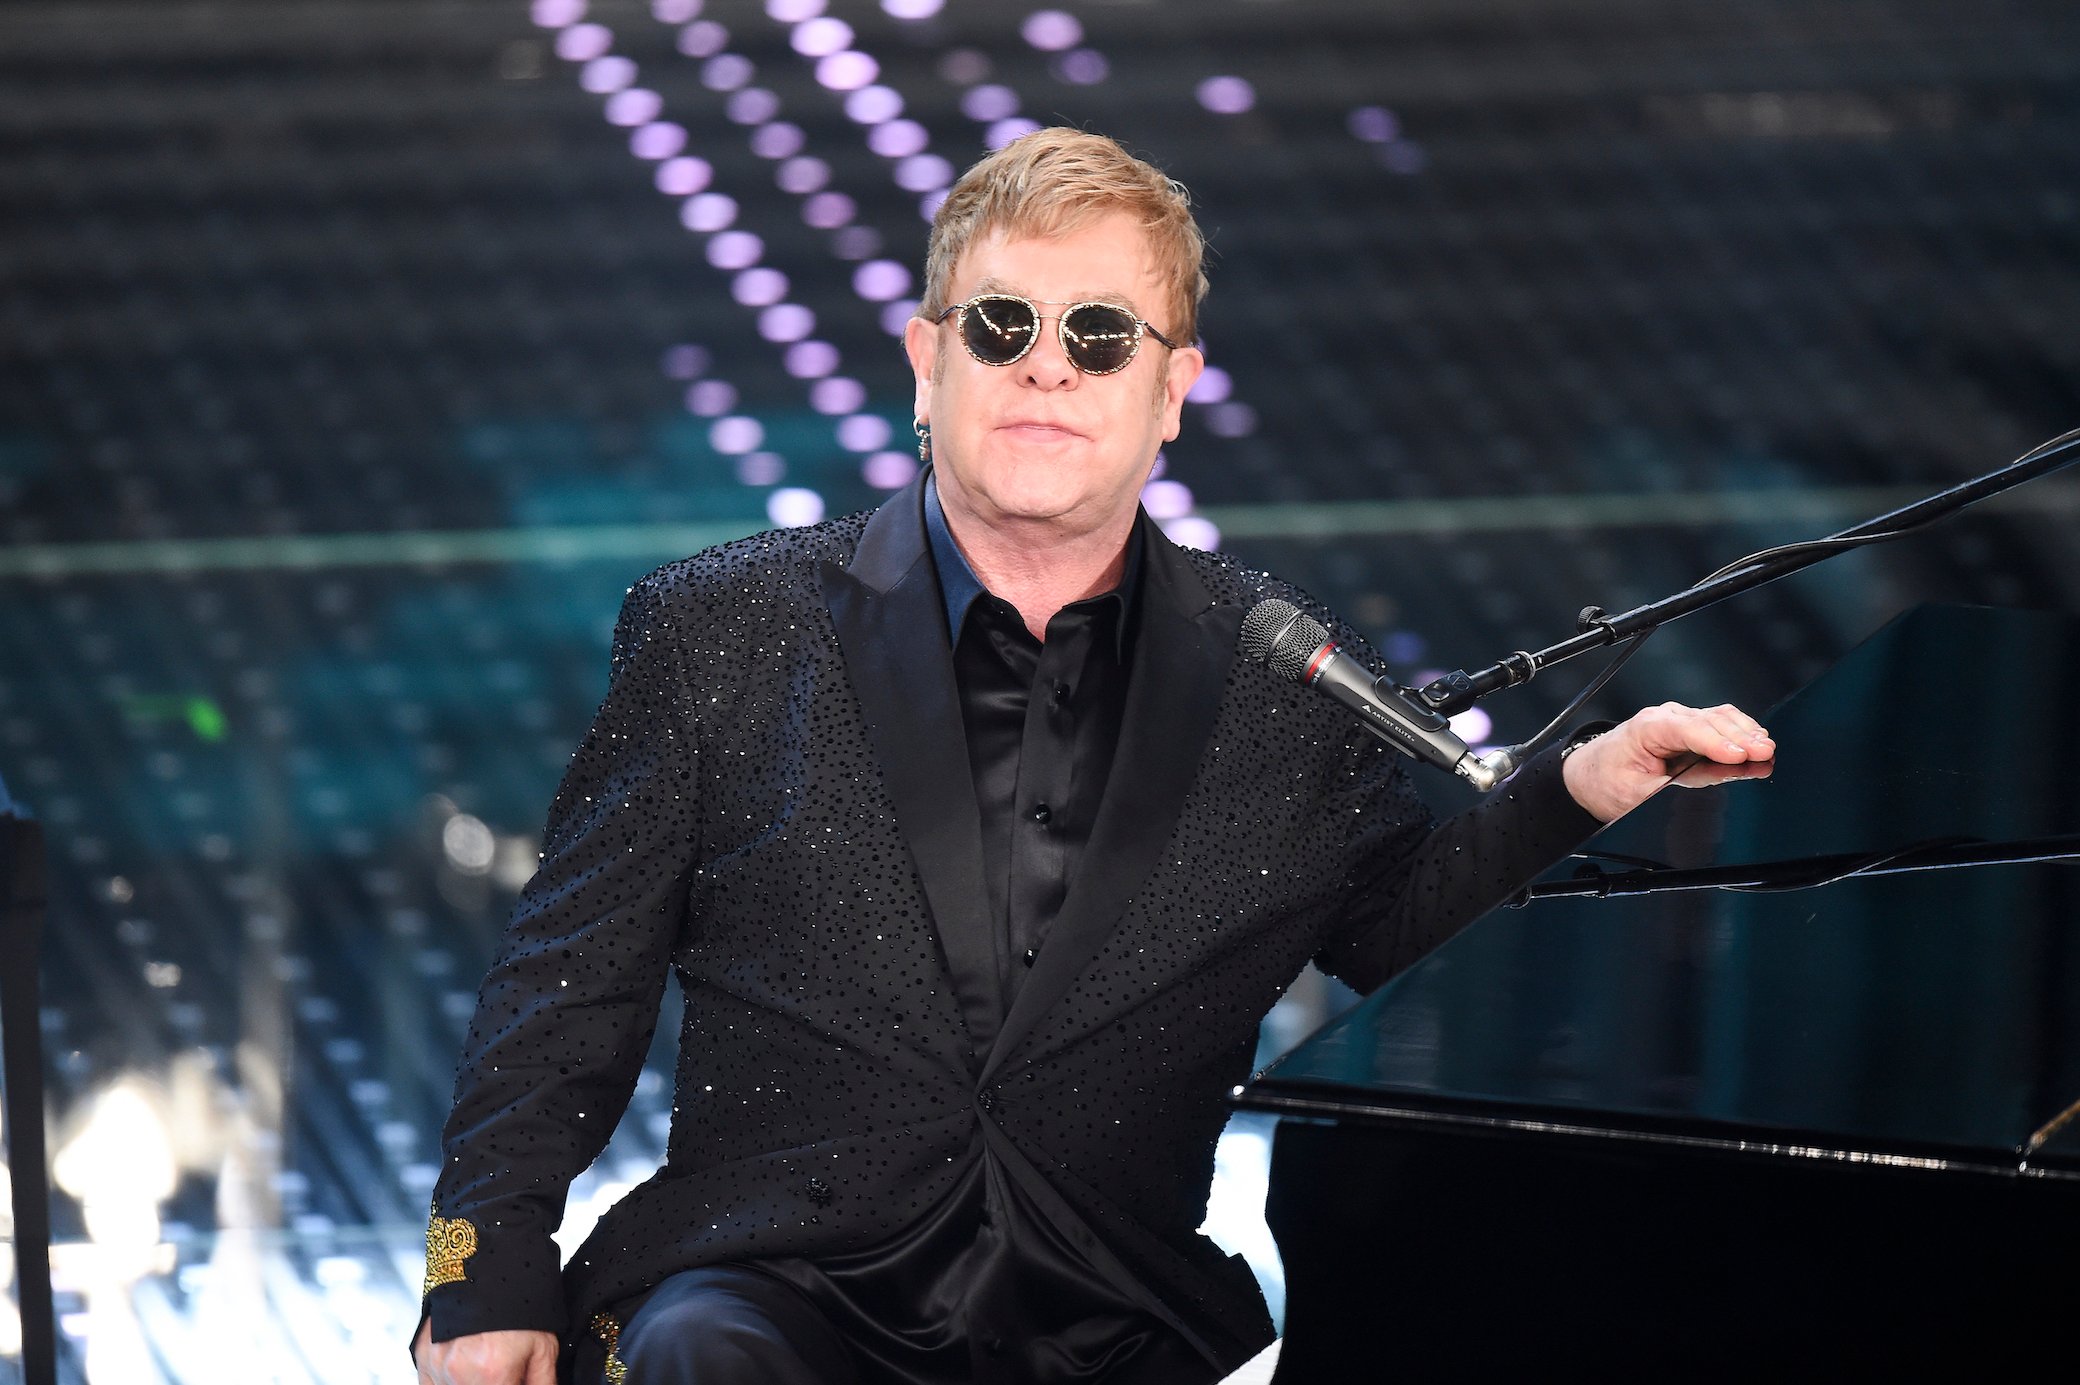 Elton John attends the Festival Di Sanremo 2016 in Sanremo, Italy